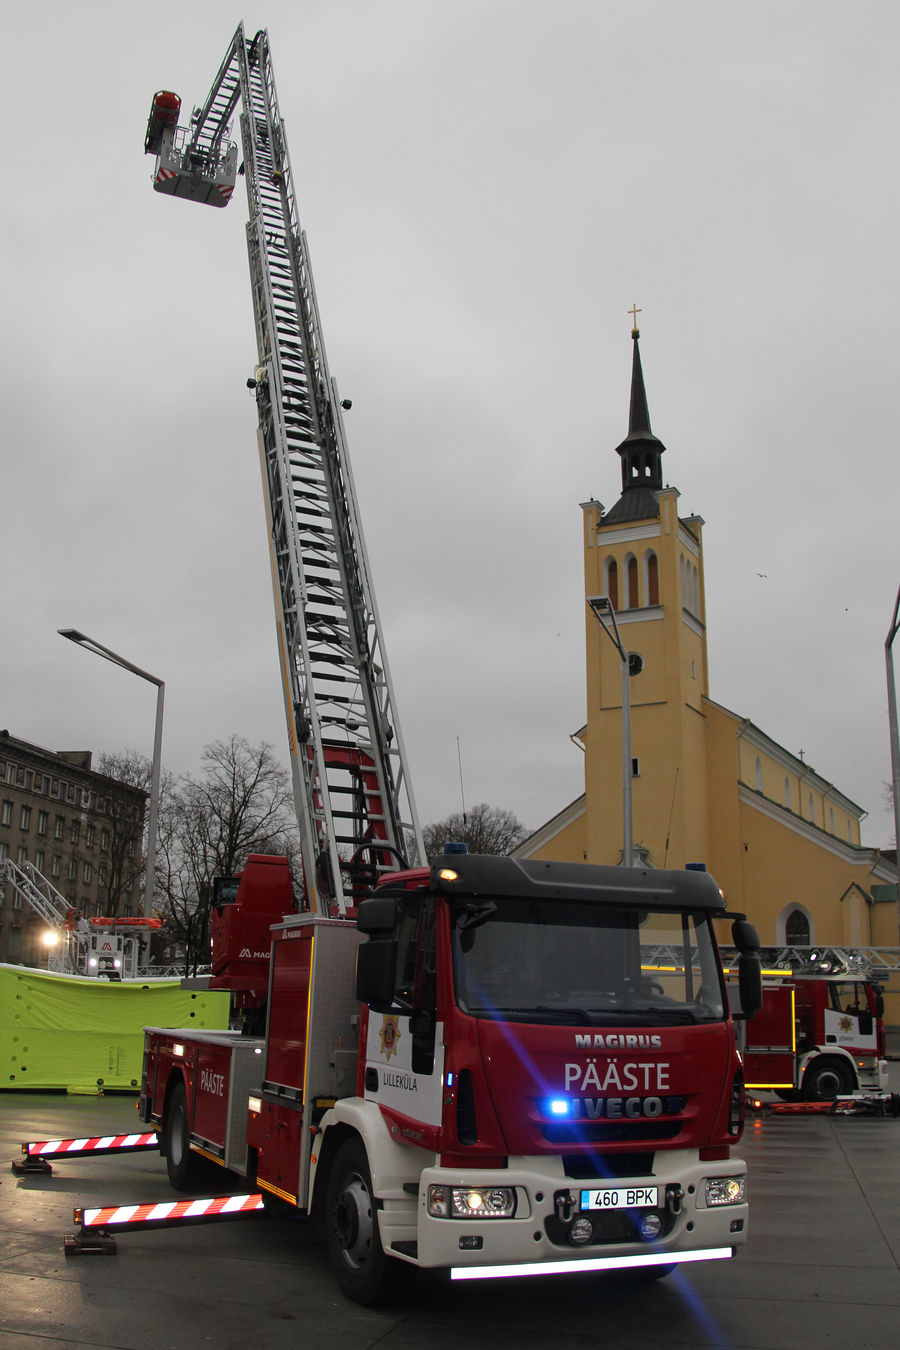 Lilleküla 4-1 (460BPK)
Iveco FF160E/Magirus M32L-AT "Laurits" (2015)
27.11.2015
Tallinn, Vabaduse väljak
